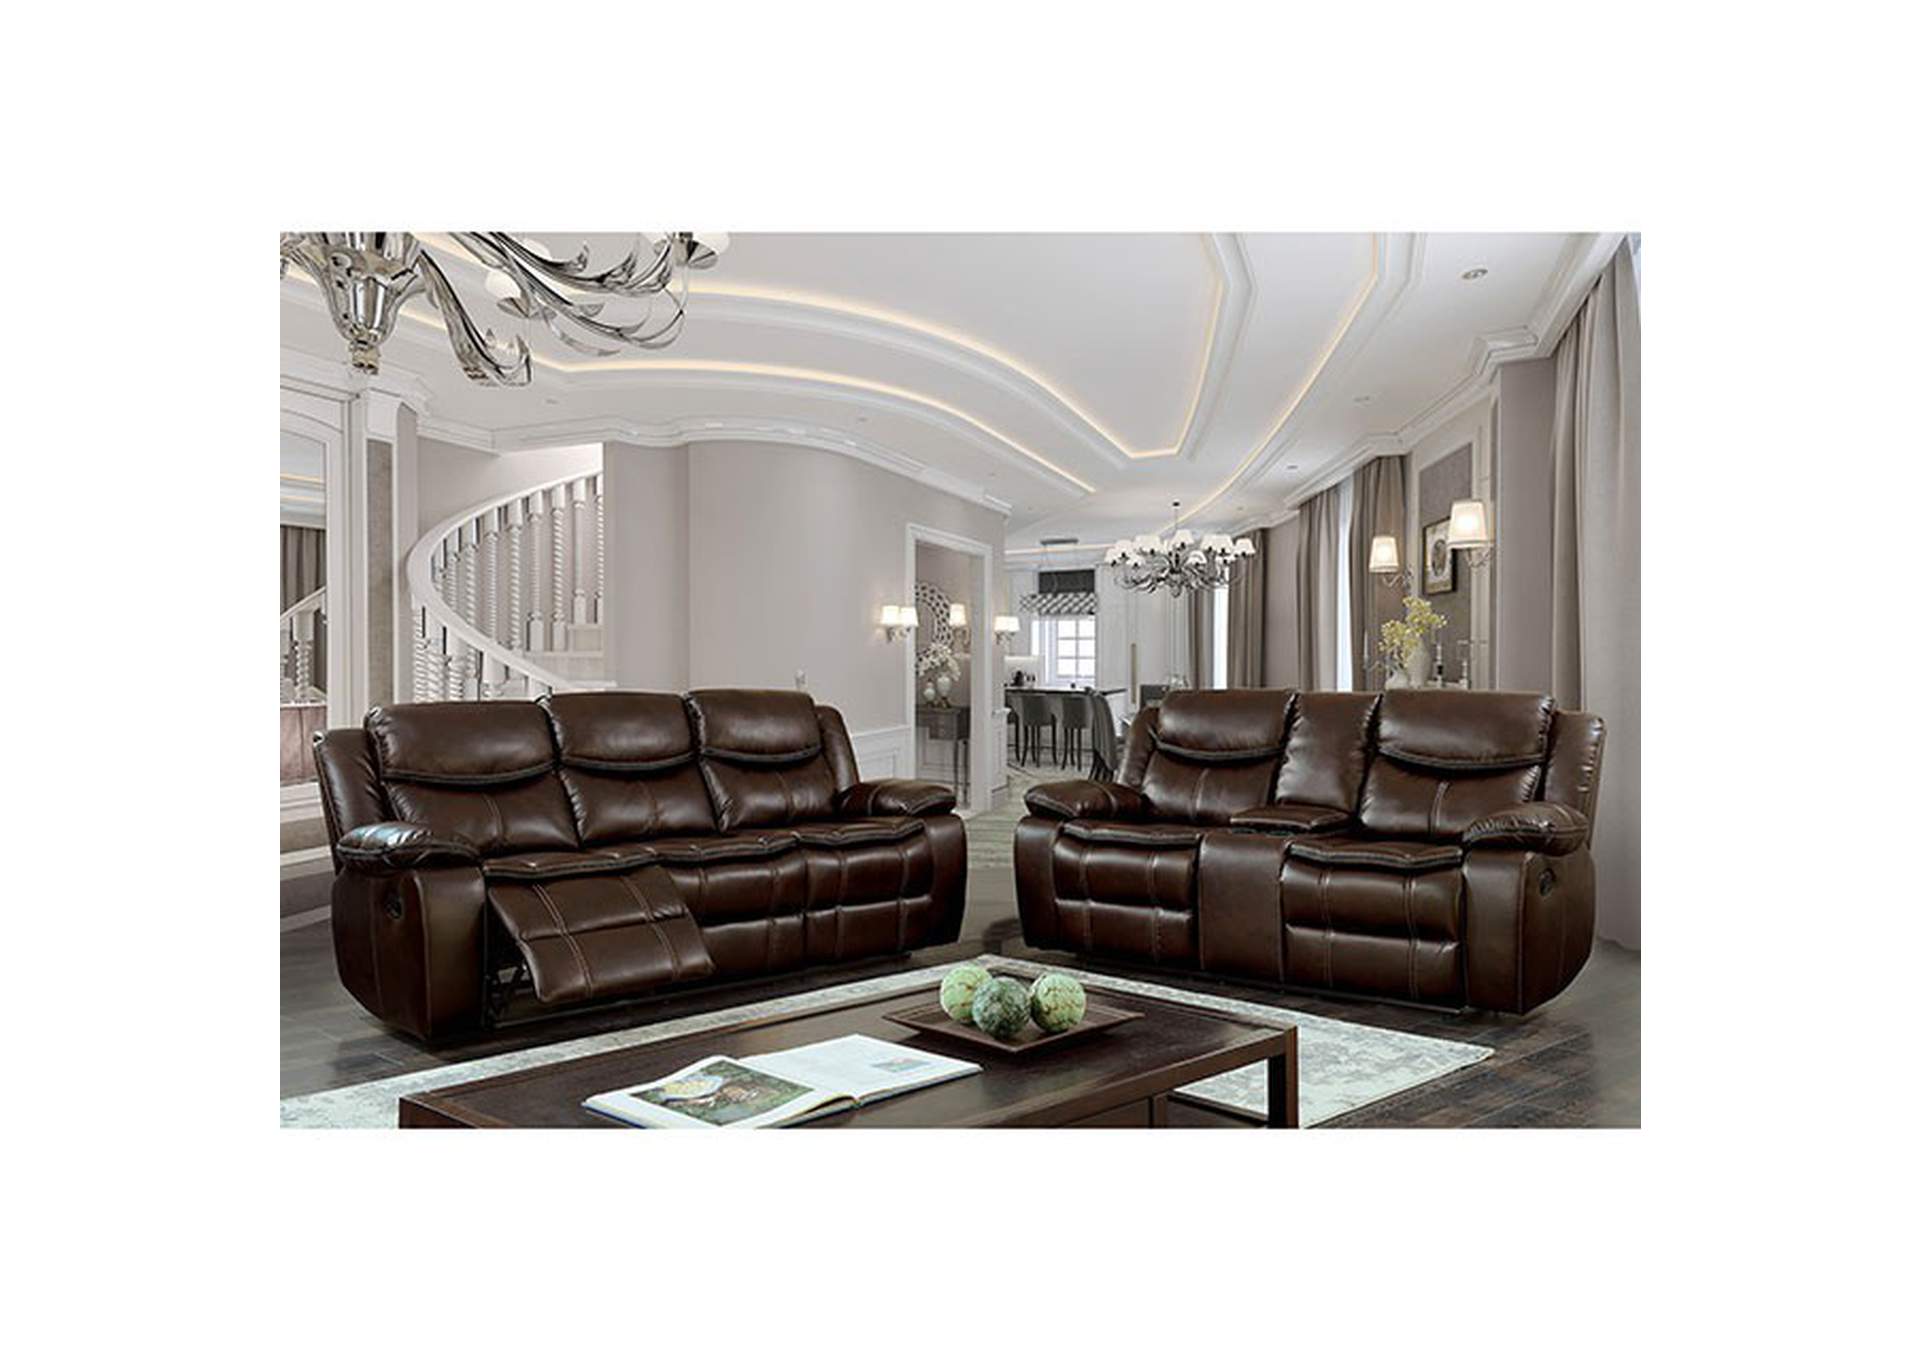 Pollux Sofa,Furniture of America